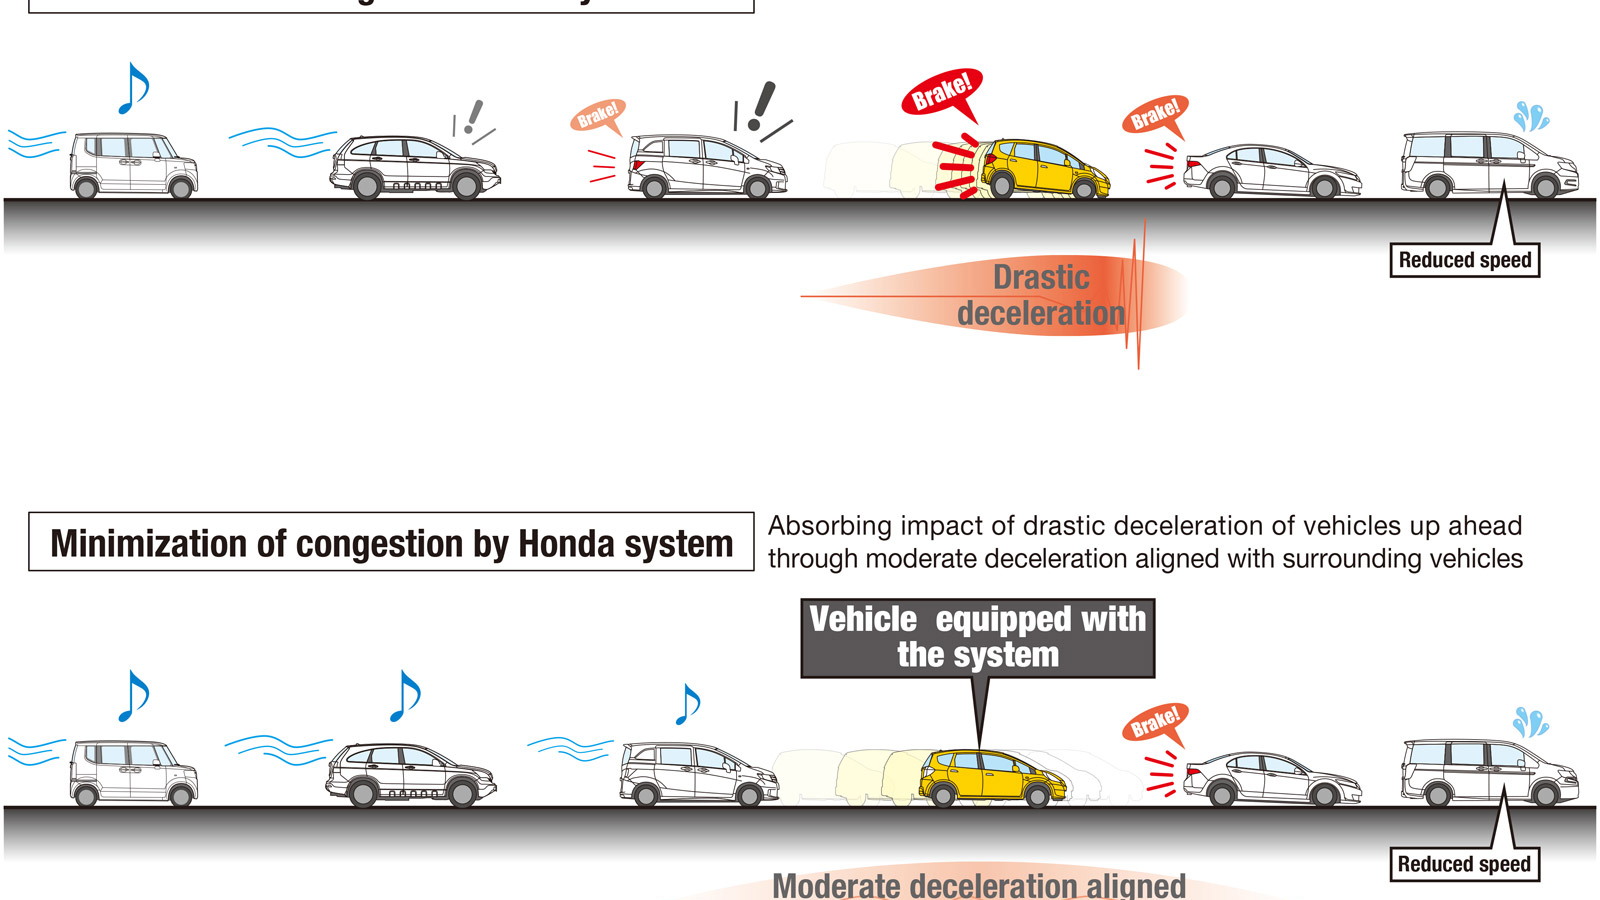 Honda congestion minimization technology